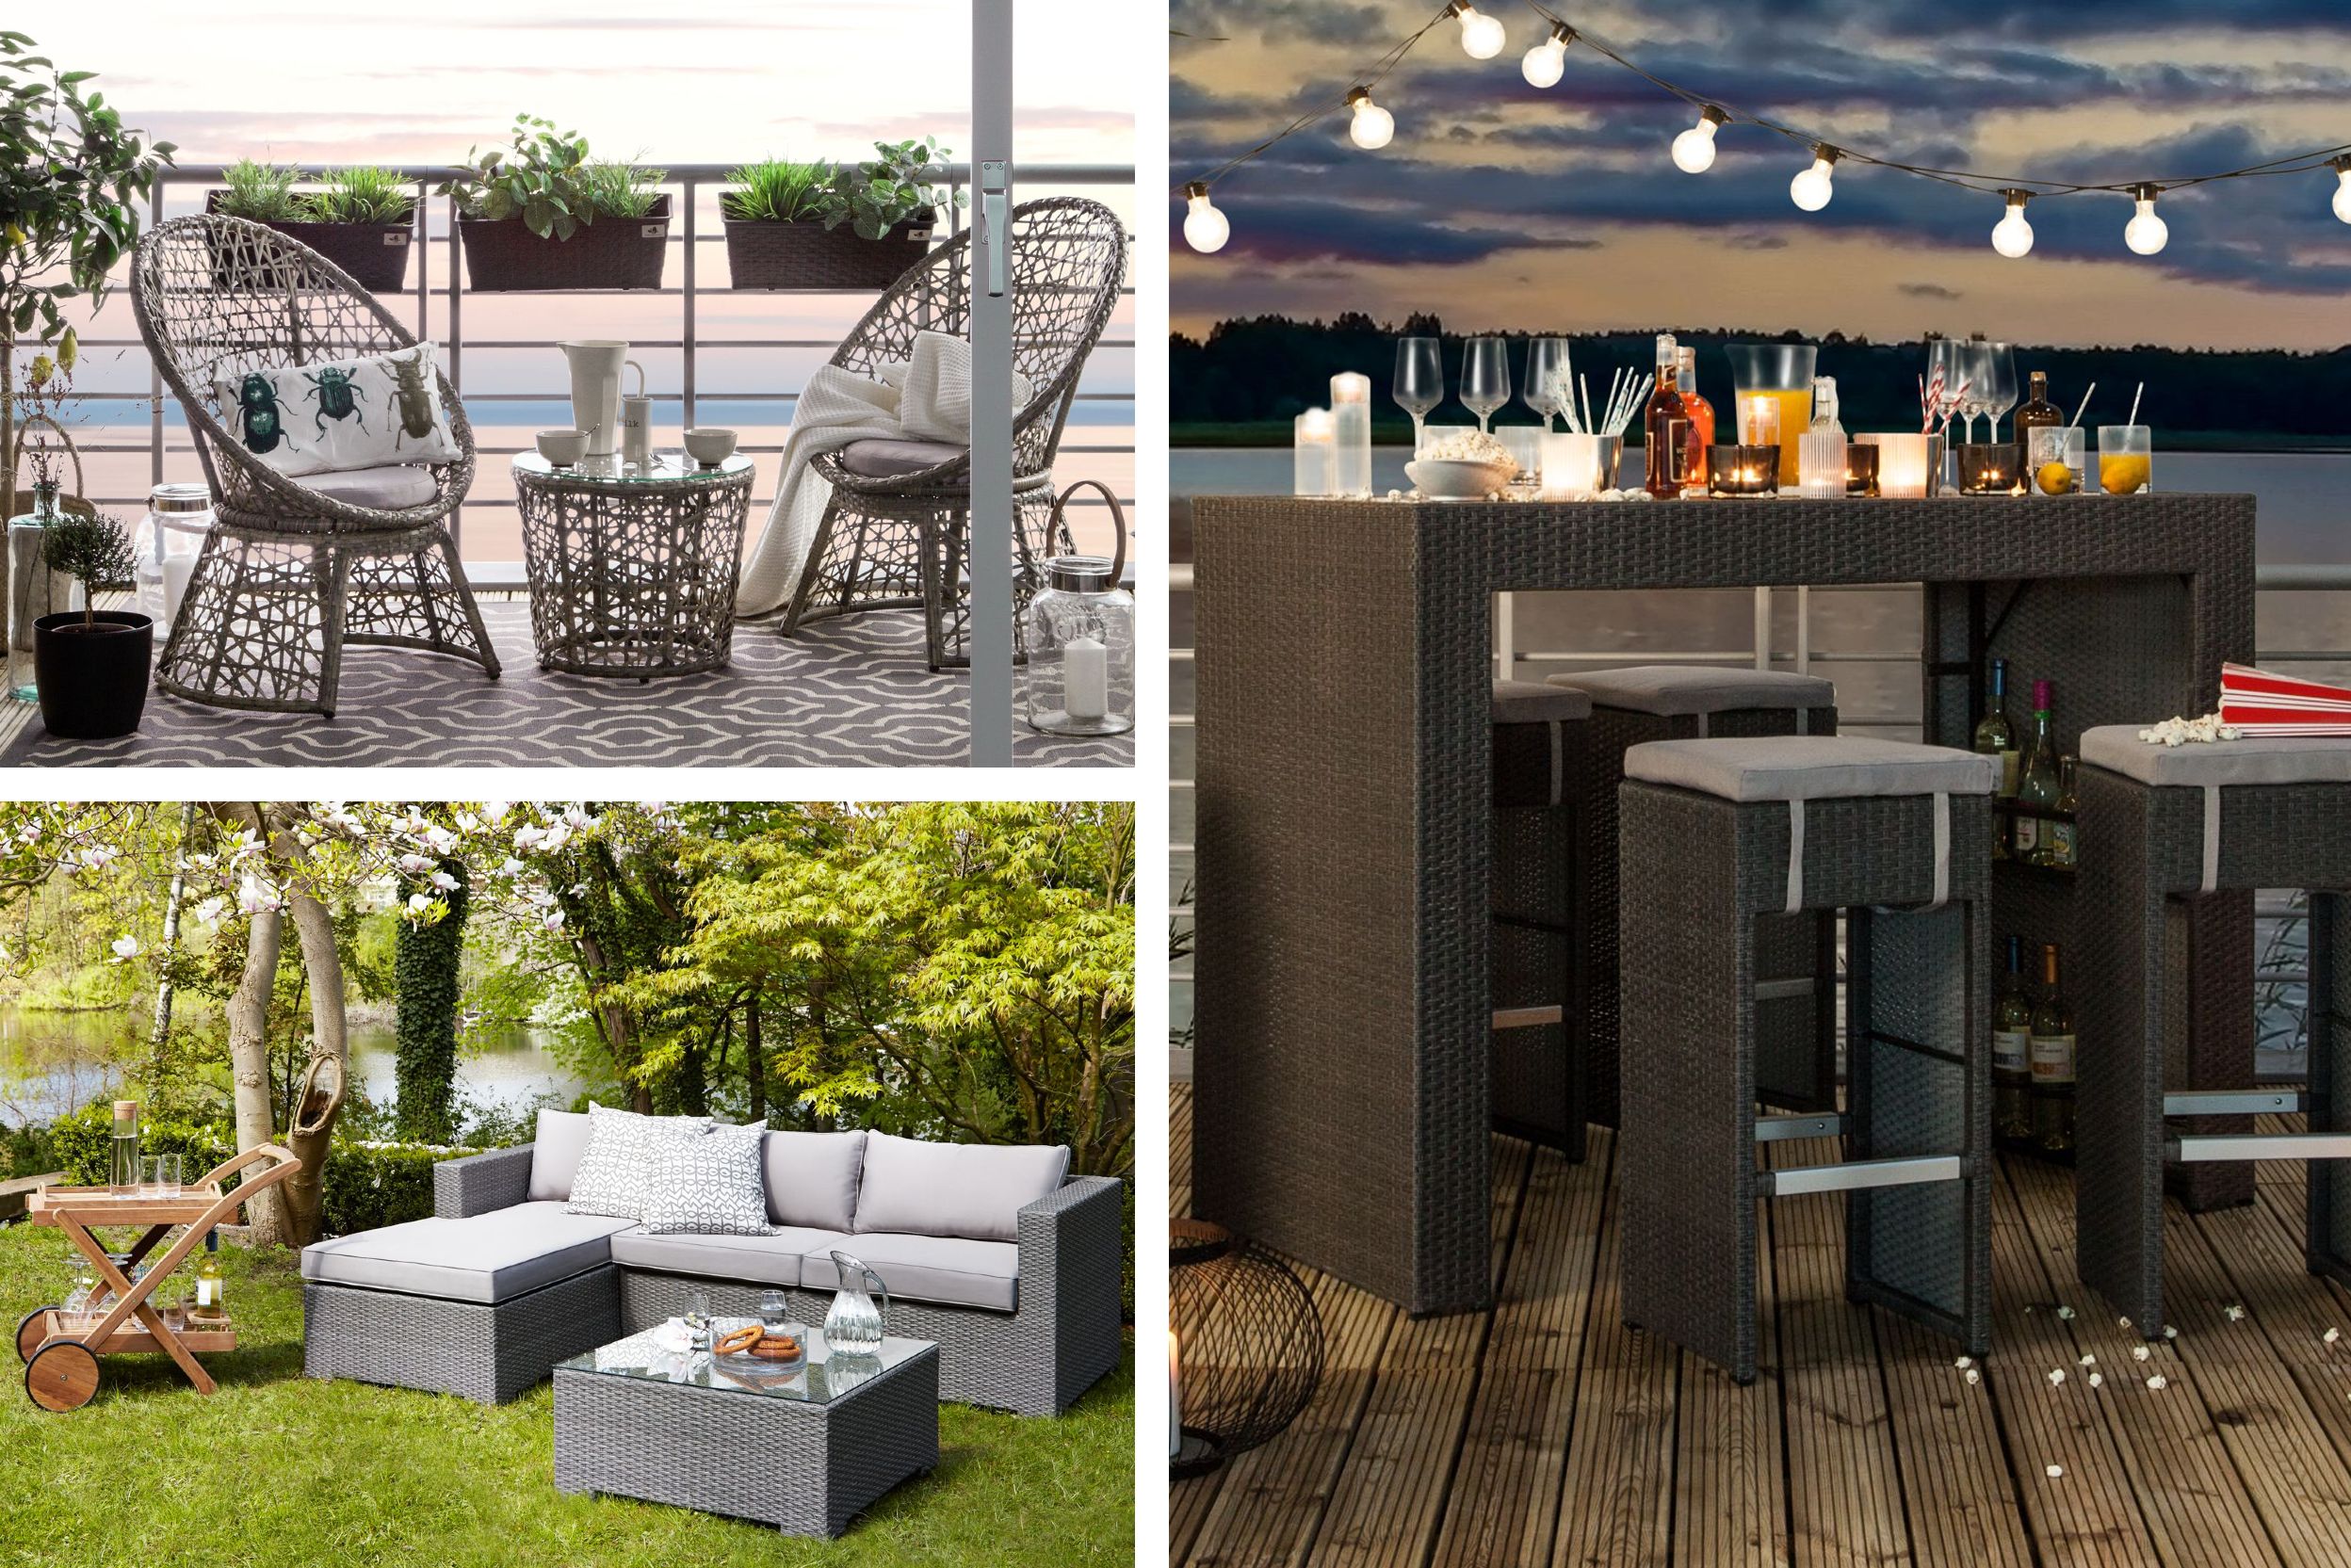 Polyrattan-Möbel wie Sessel, Barhocker und Loungesofas sind ideal für draußen